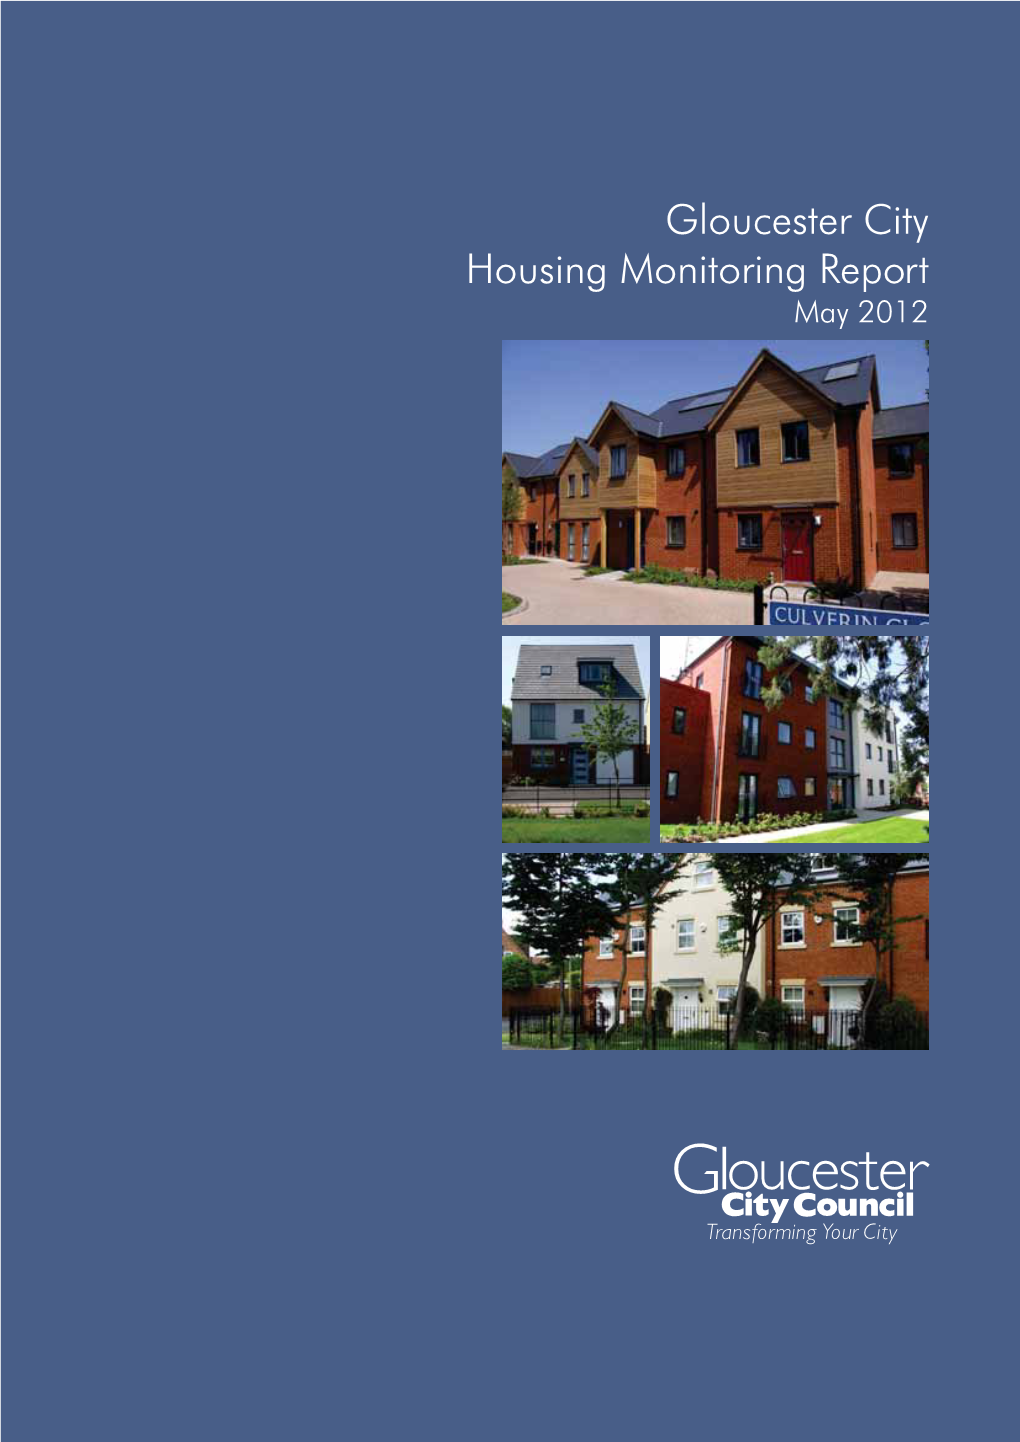 Housing Monitoring Information 2012